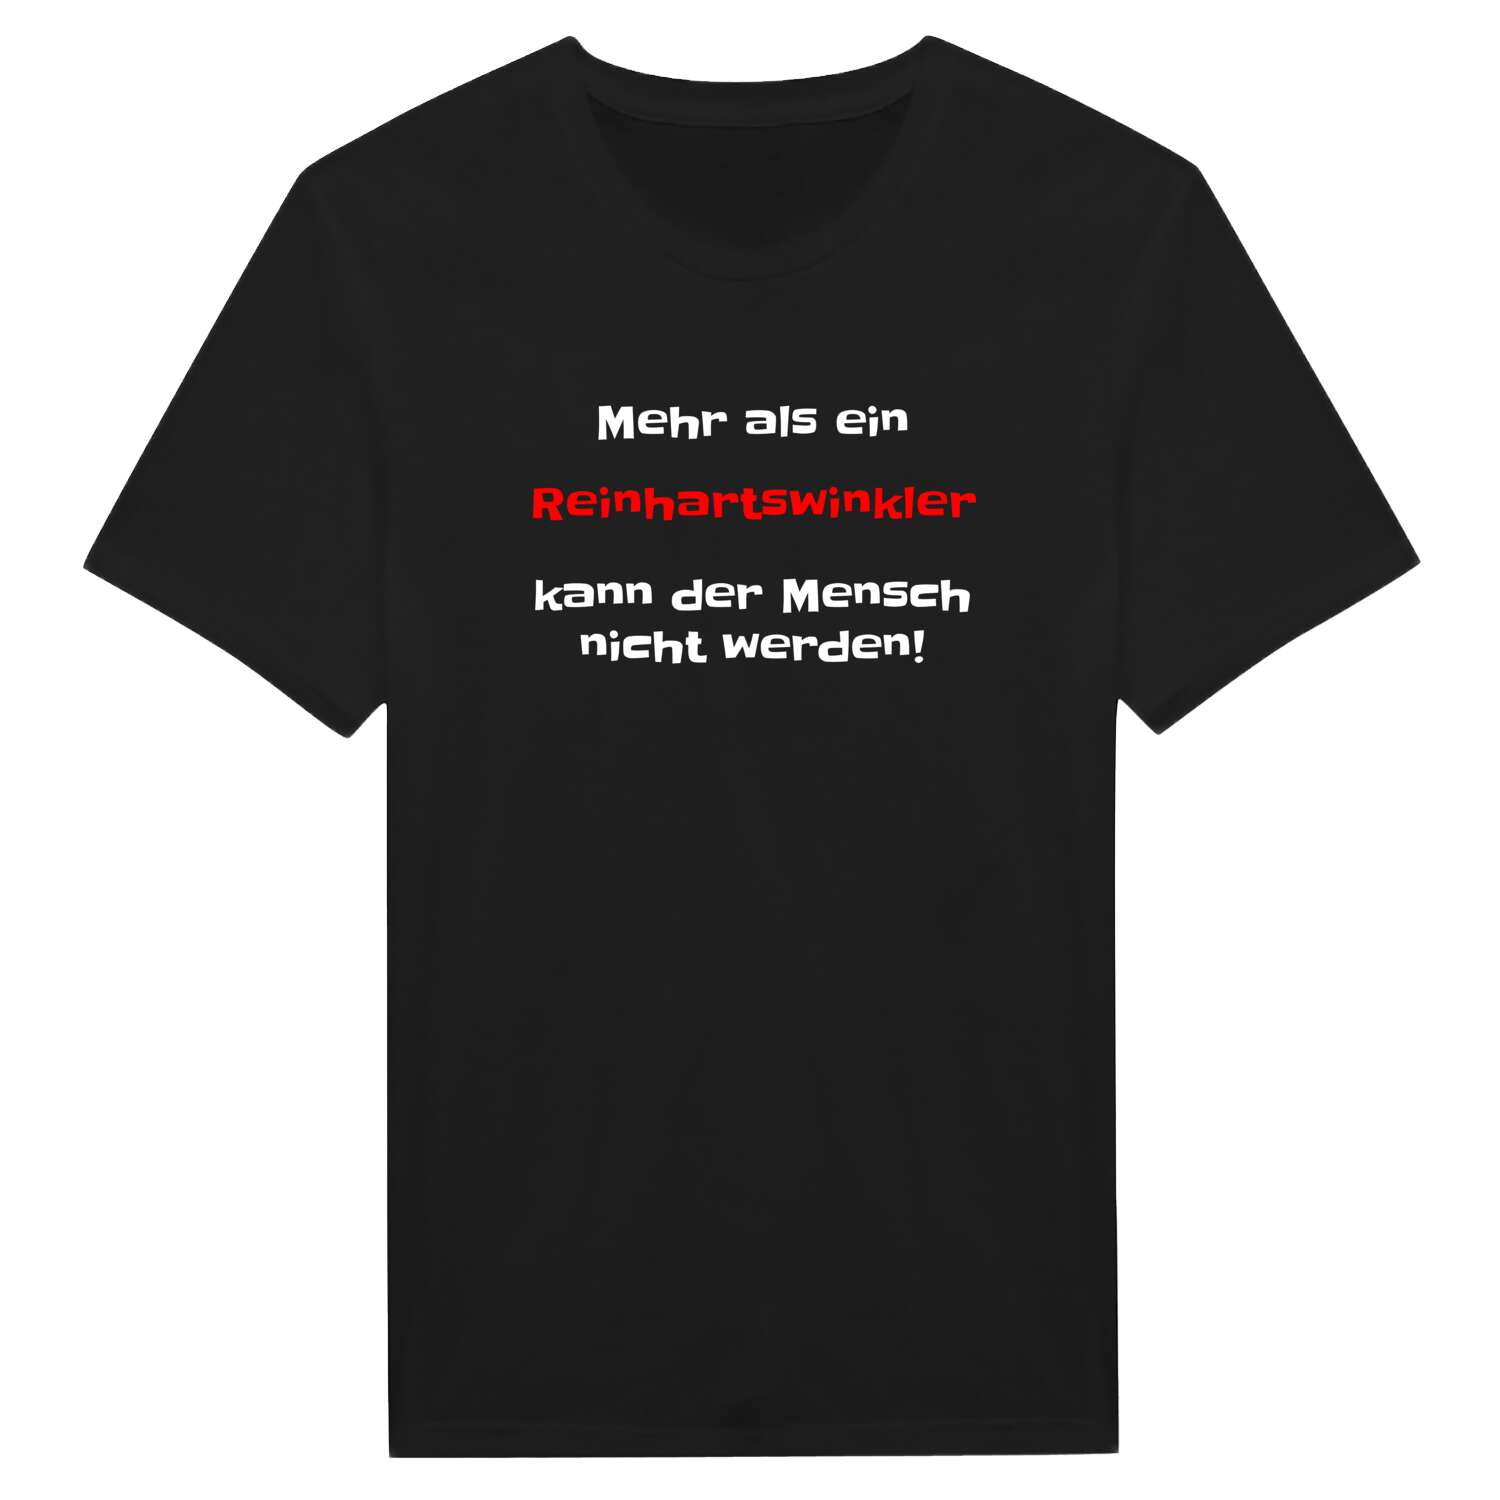 Reinhartswinkl T-Shirt »Mehr als ein«